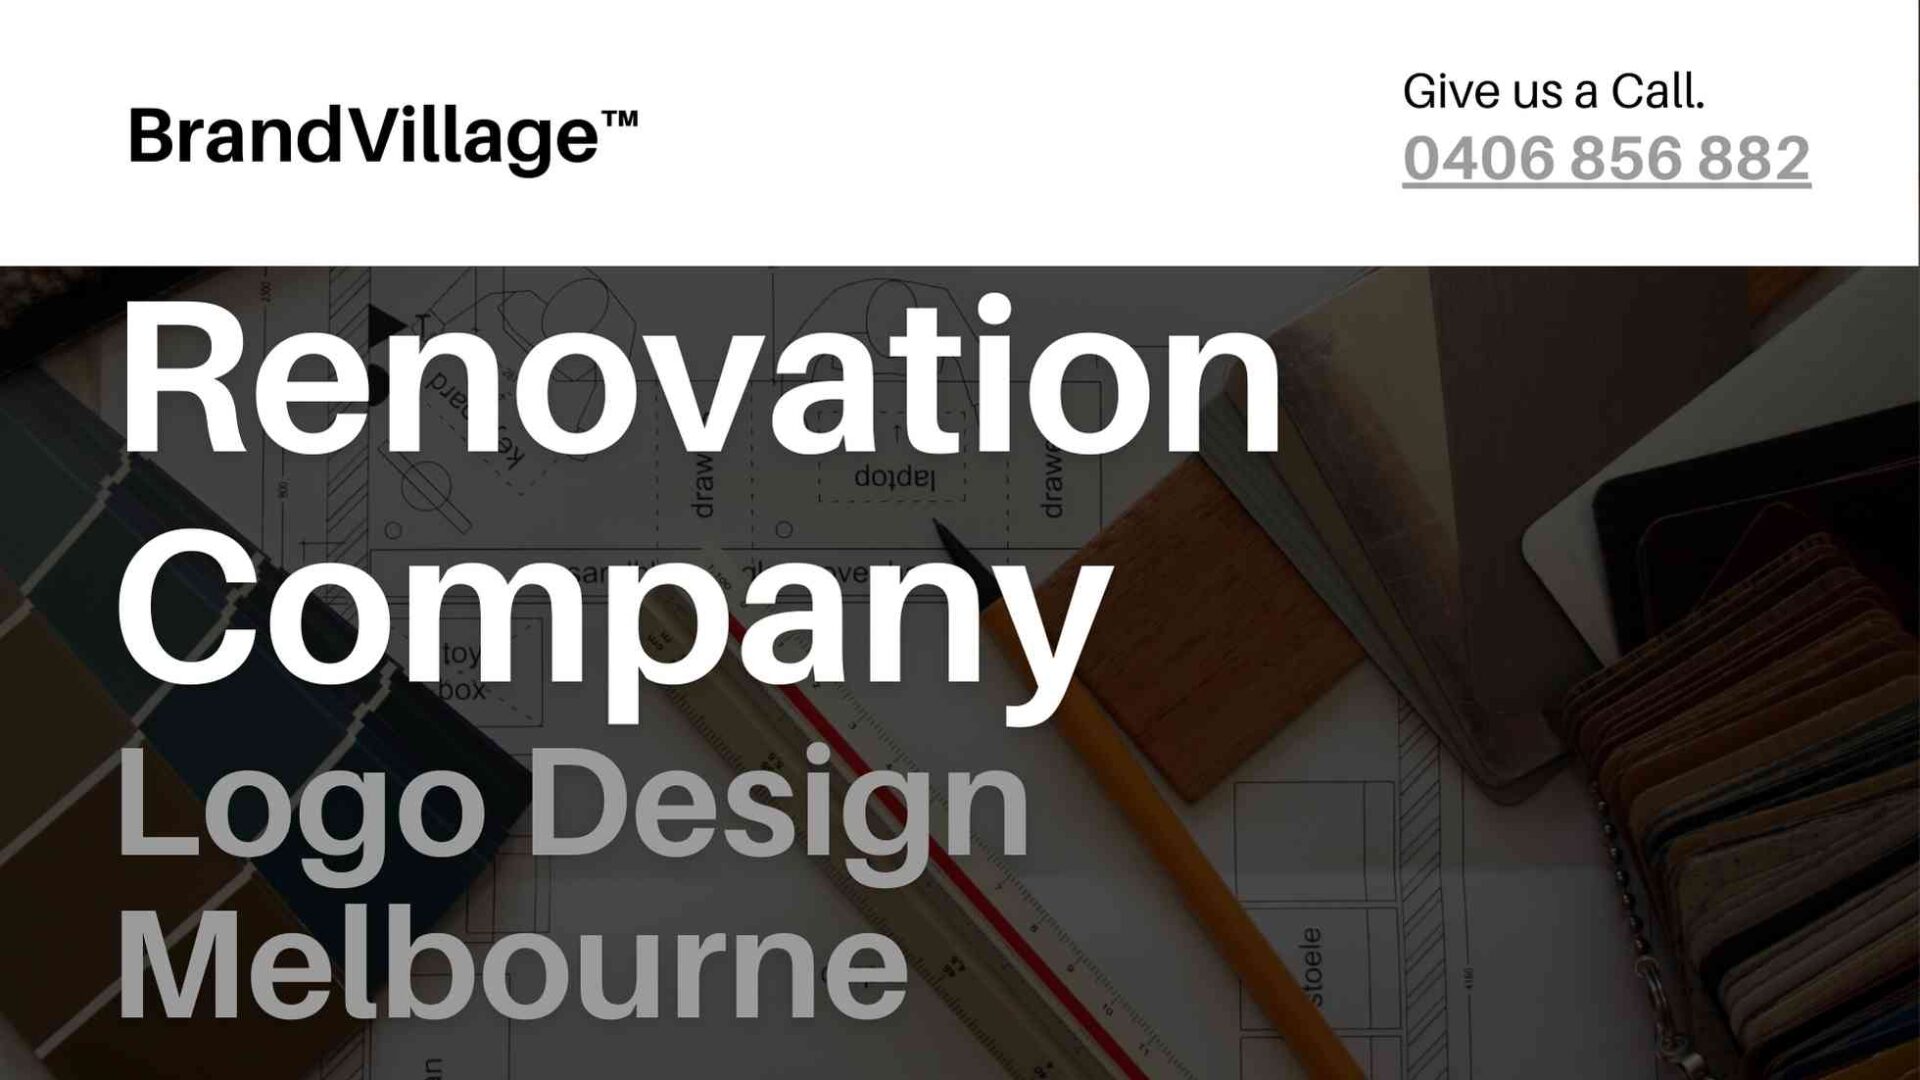 Renovation Company Logo Design Melbourne